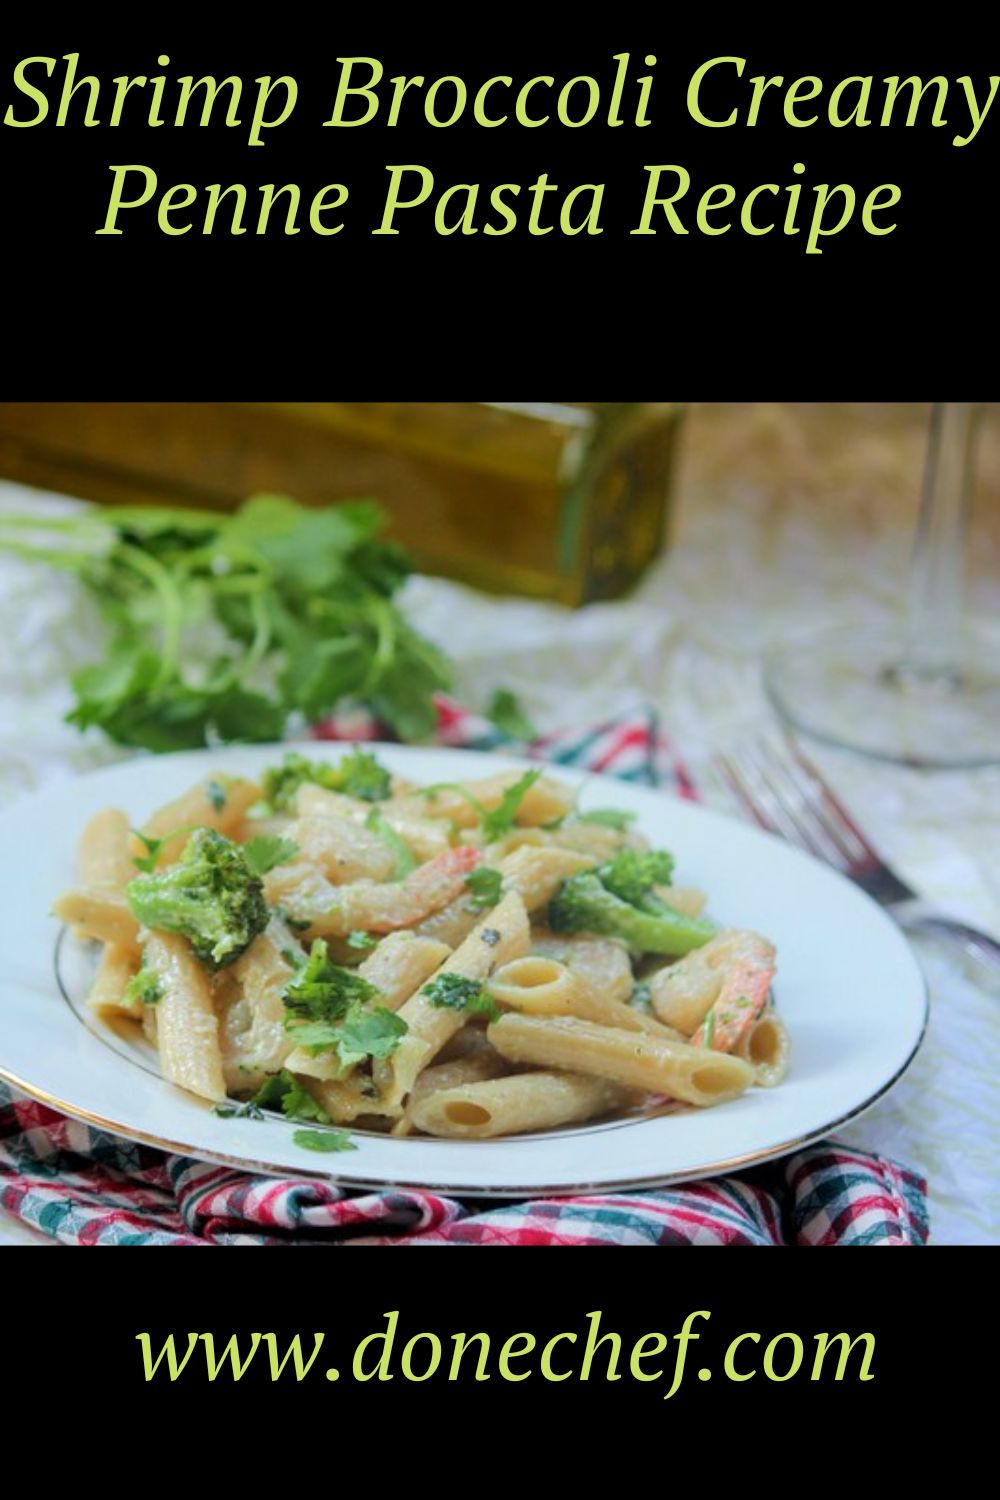 Shrimp Broccoli Creamy Penne Pasta Recipe